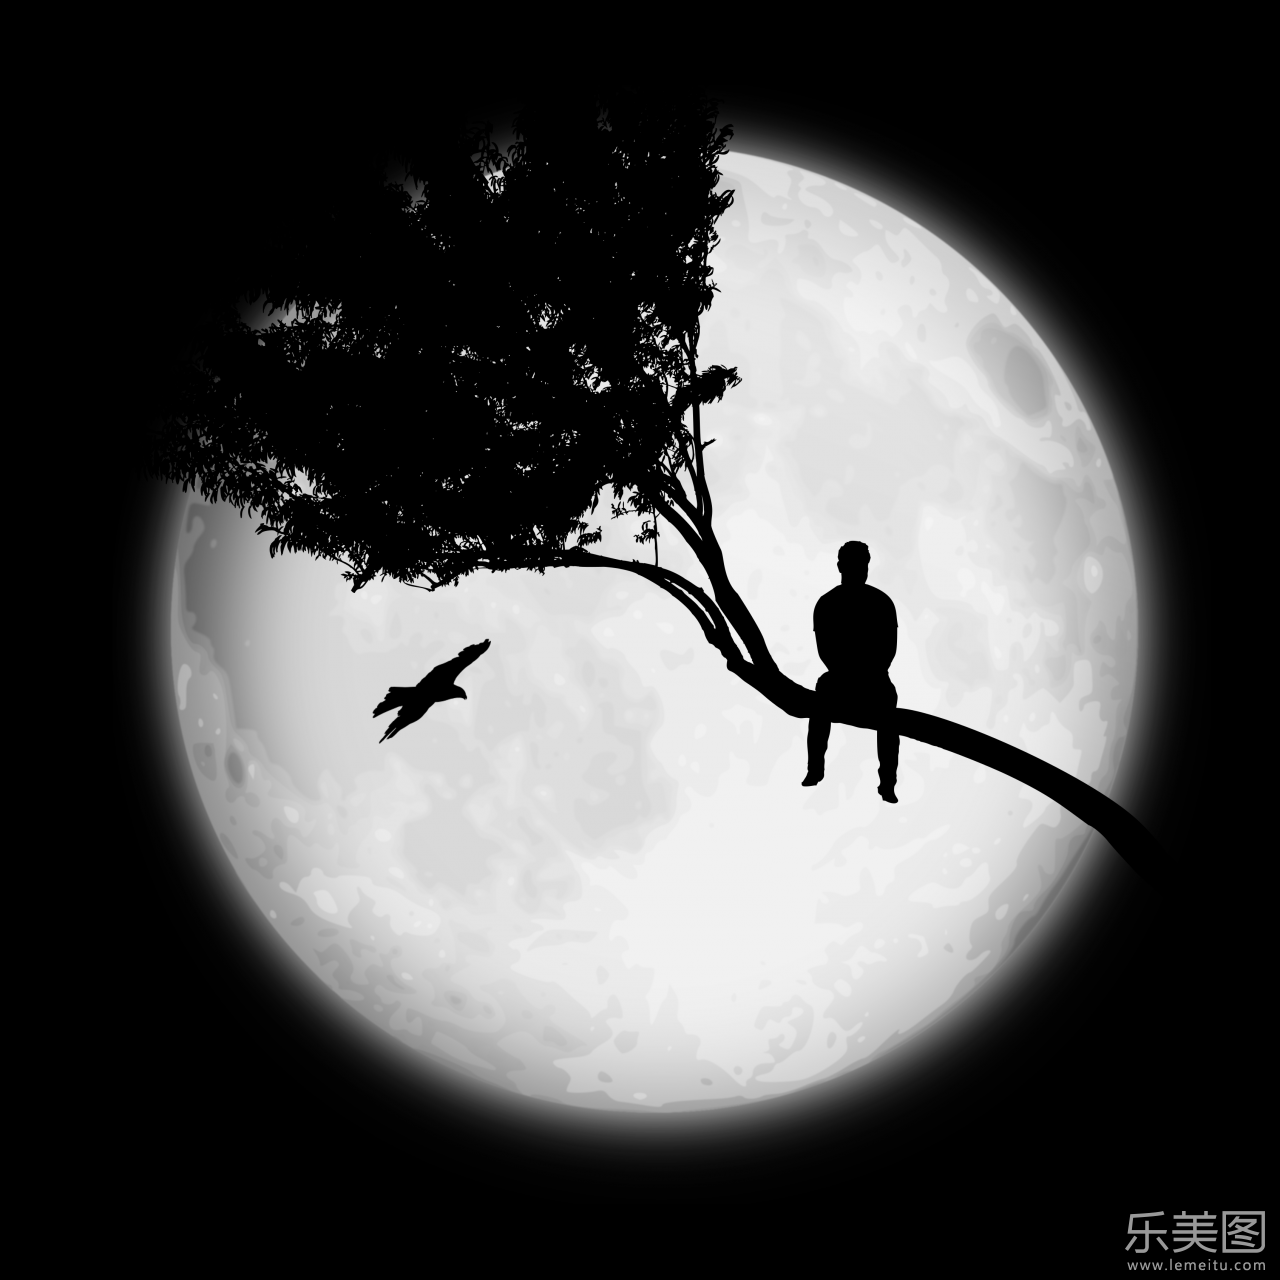 2018-04-09 作品简介 在黑夜巨大的月亮下有着一个孤单的人影坐在